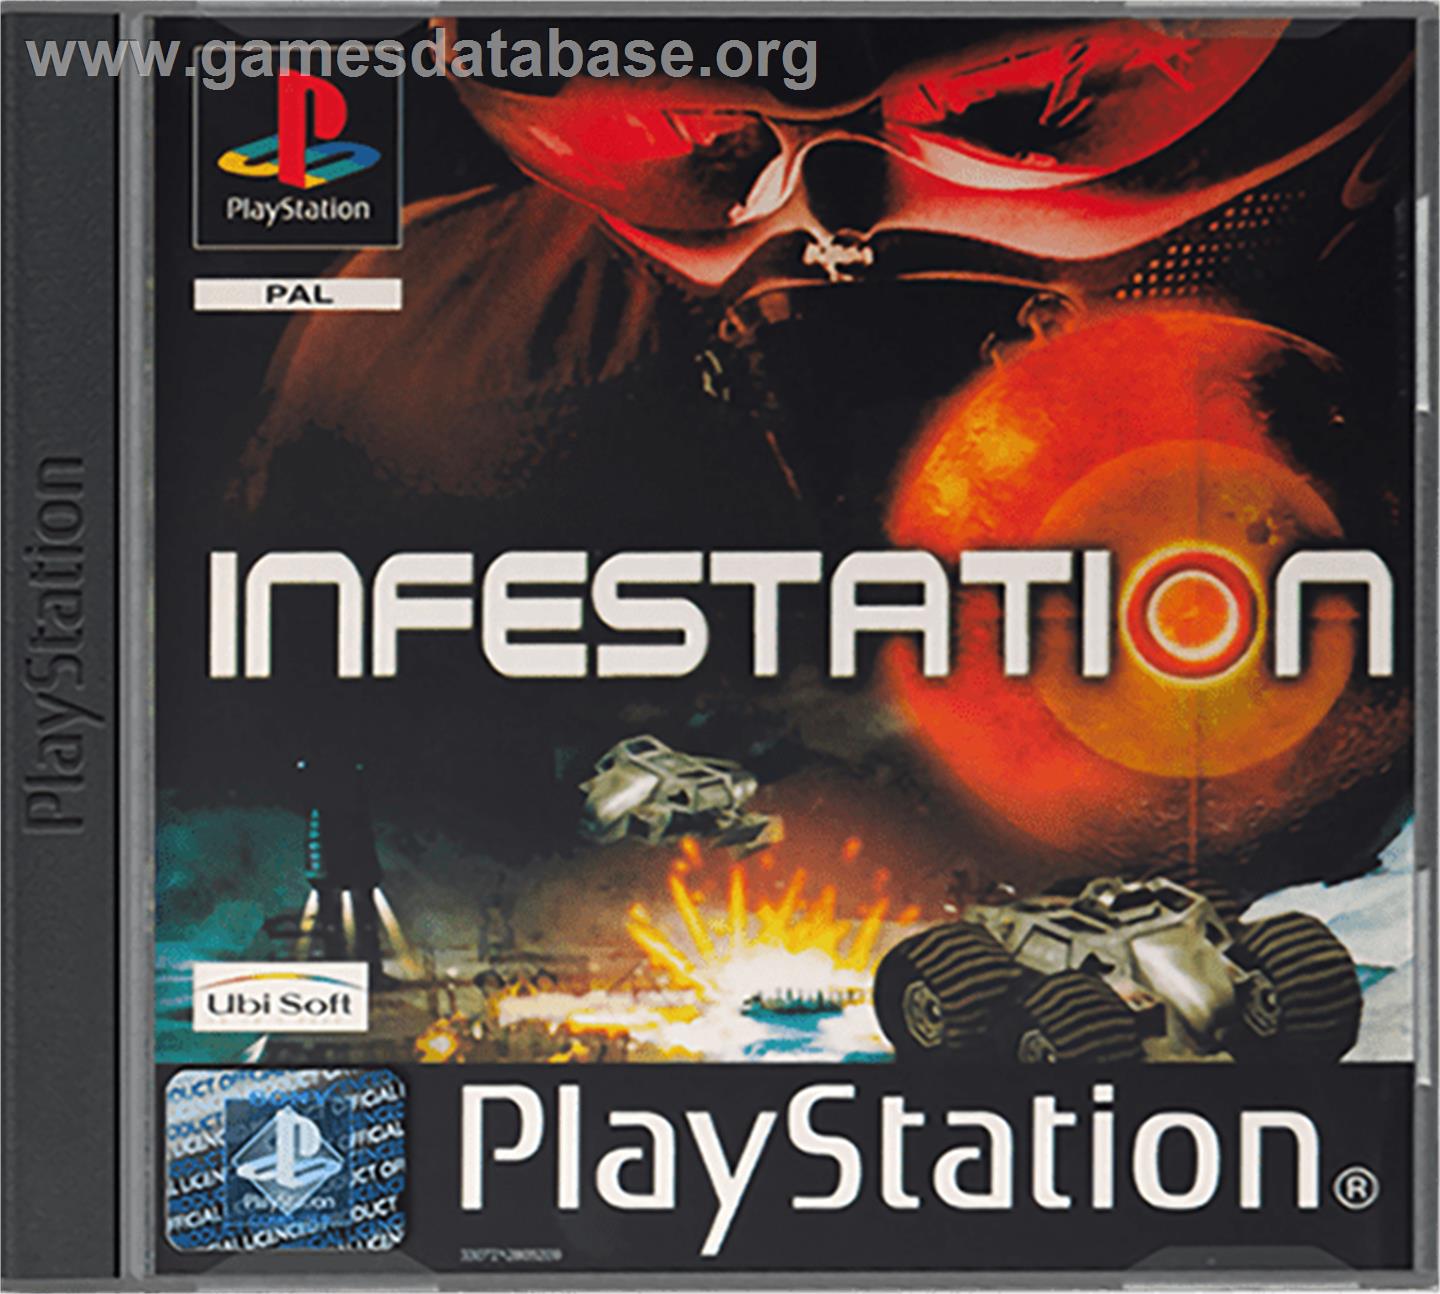 Infestation - Sony Playstation - Artwork - Box